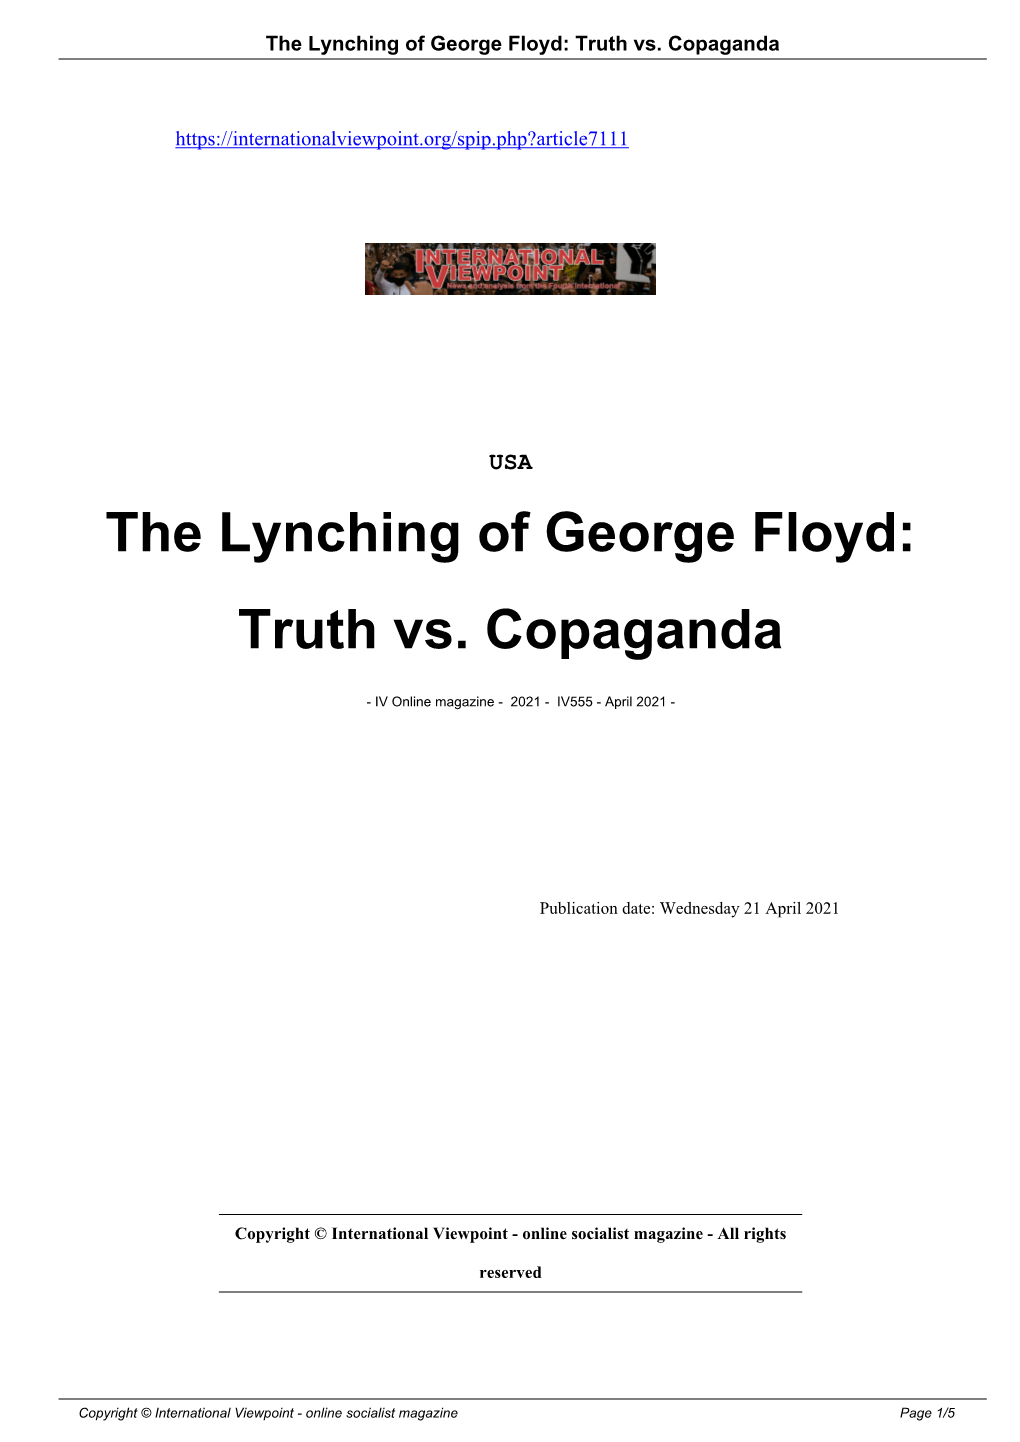 The Lynching of George Floyd: Truth Vs. Copaganda